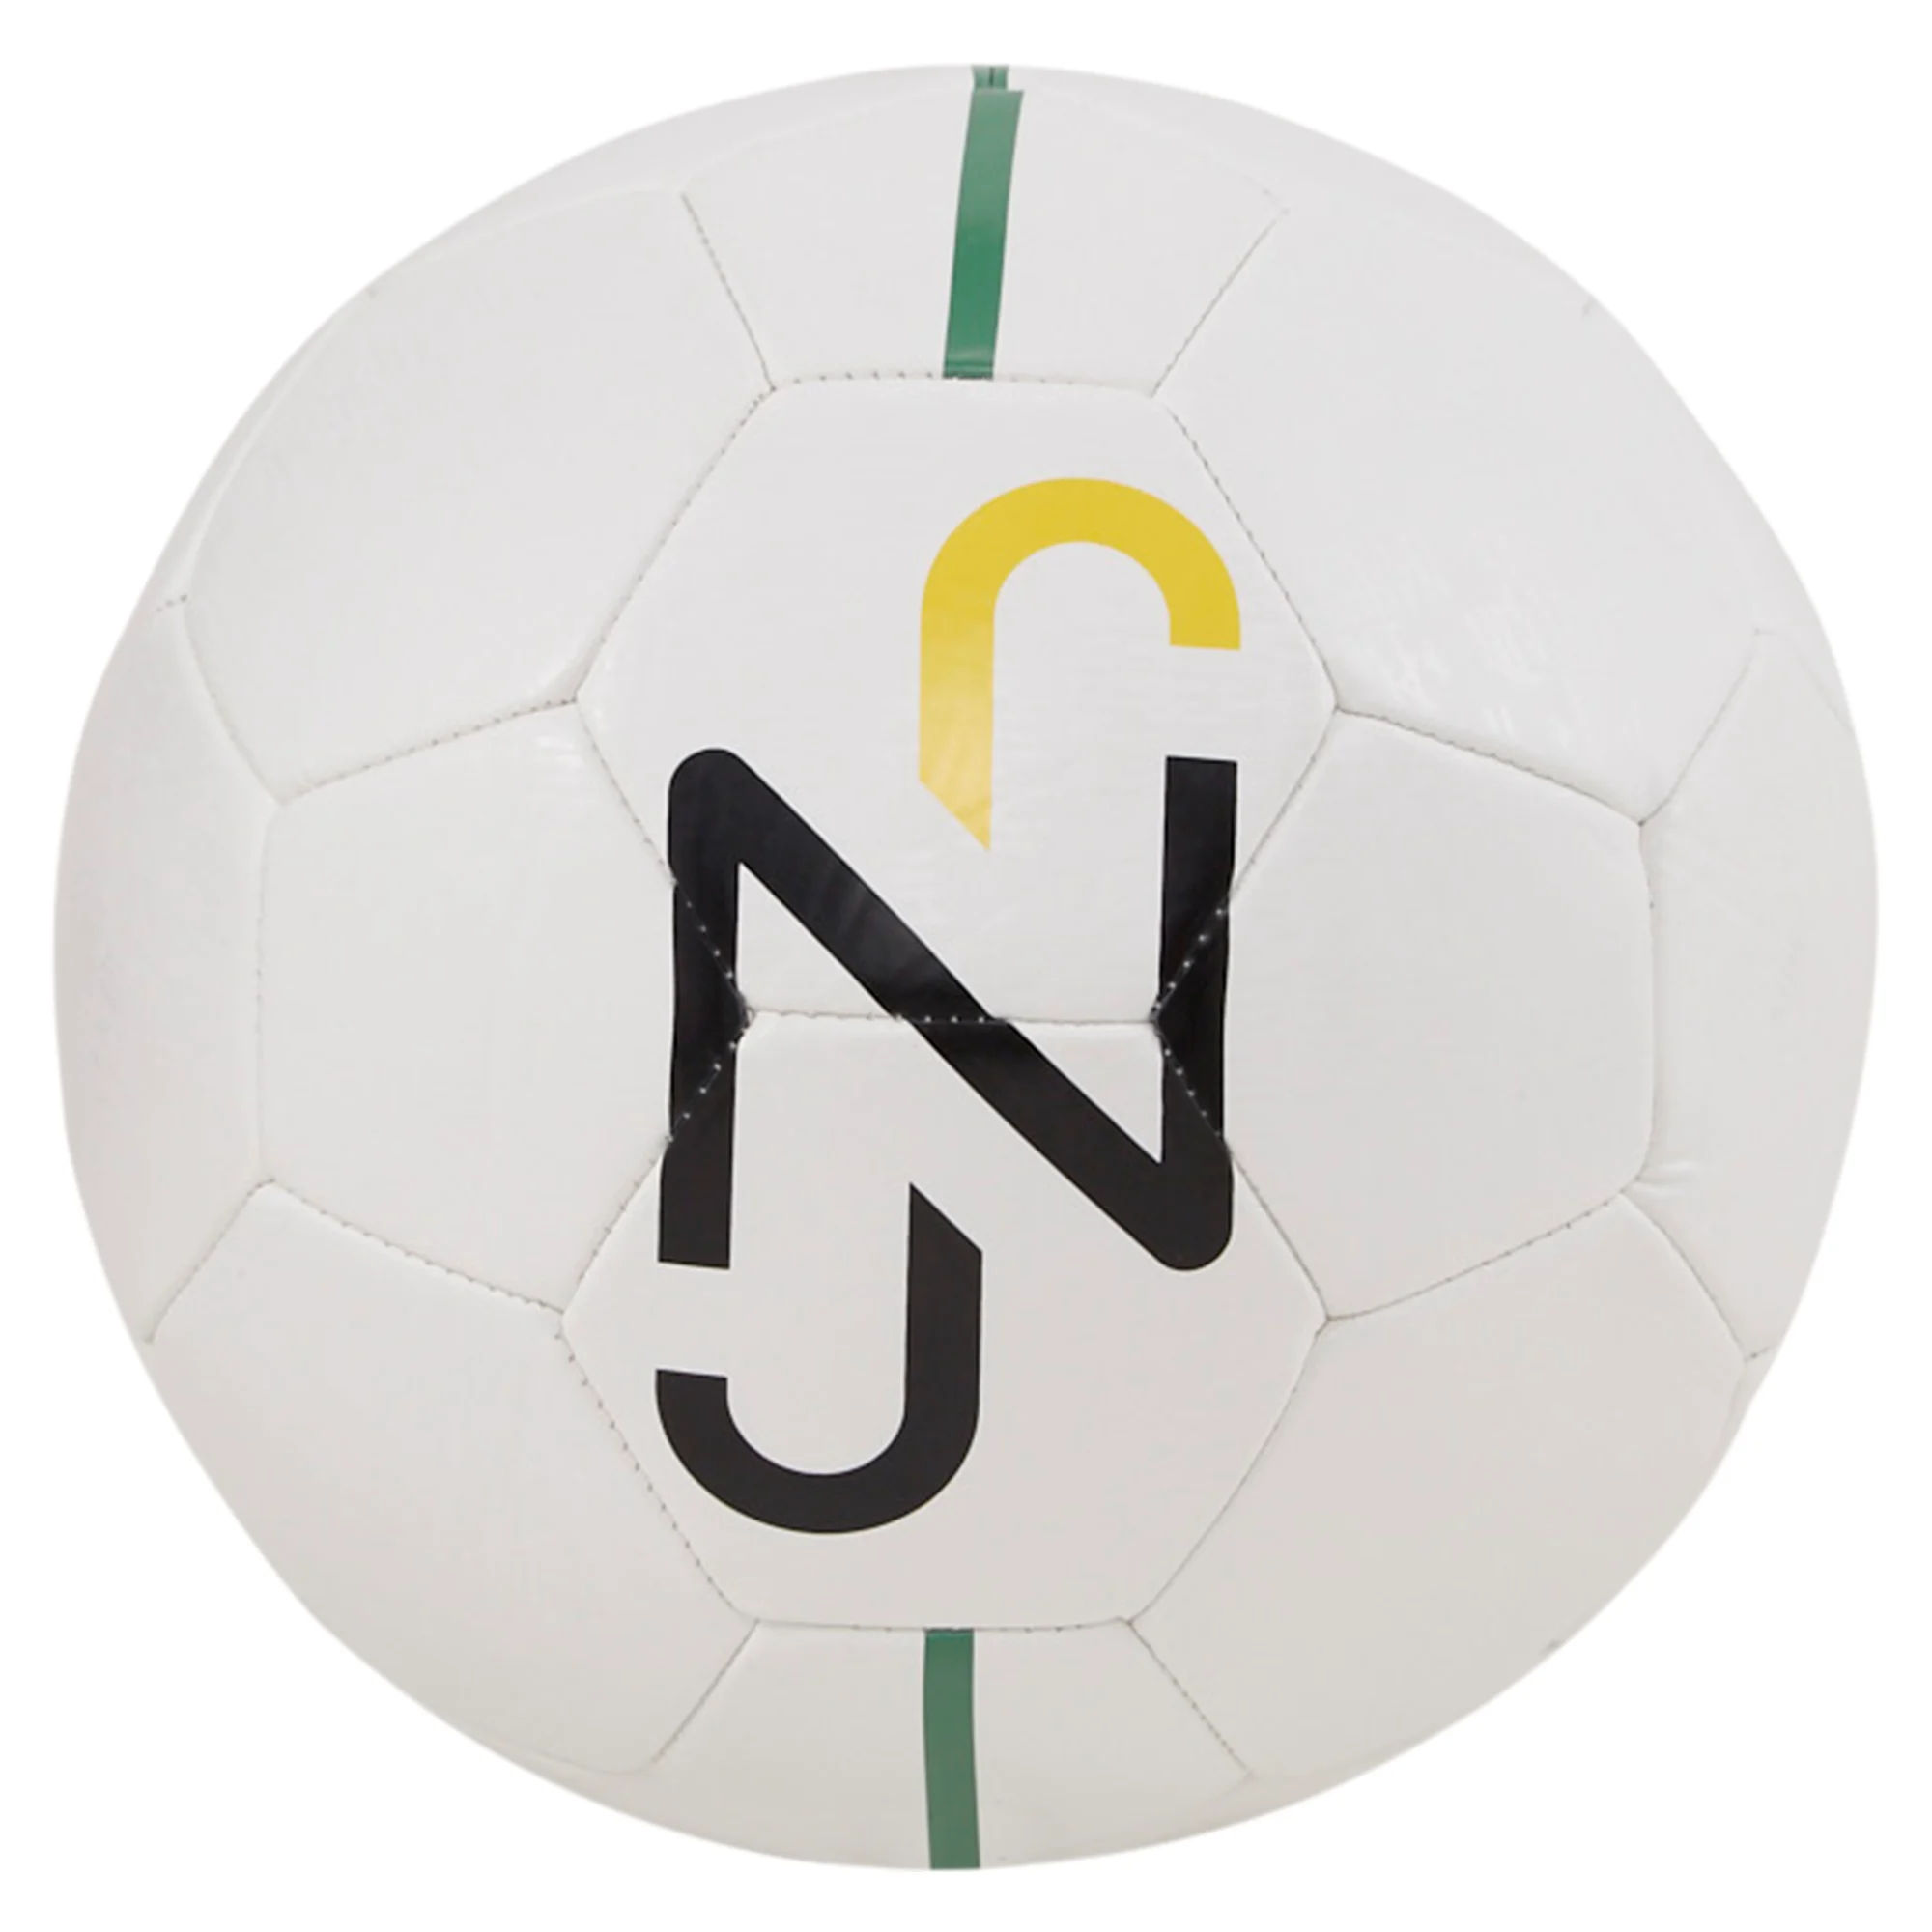 Tréninkový míč Puma Neymar Jr